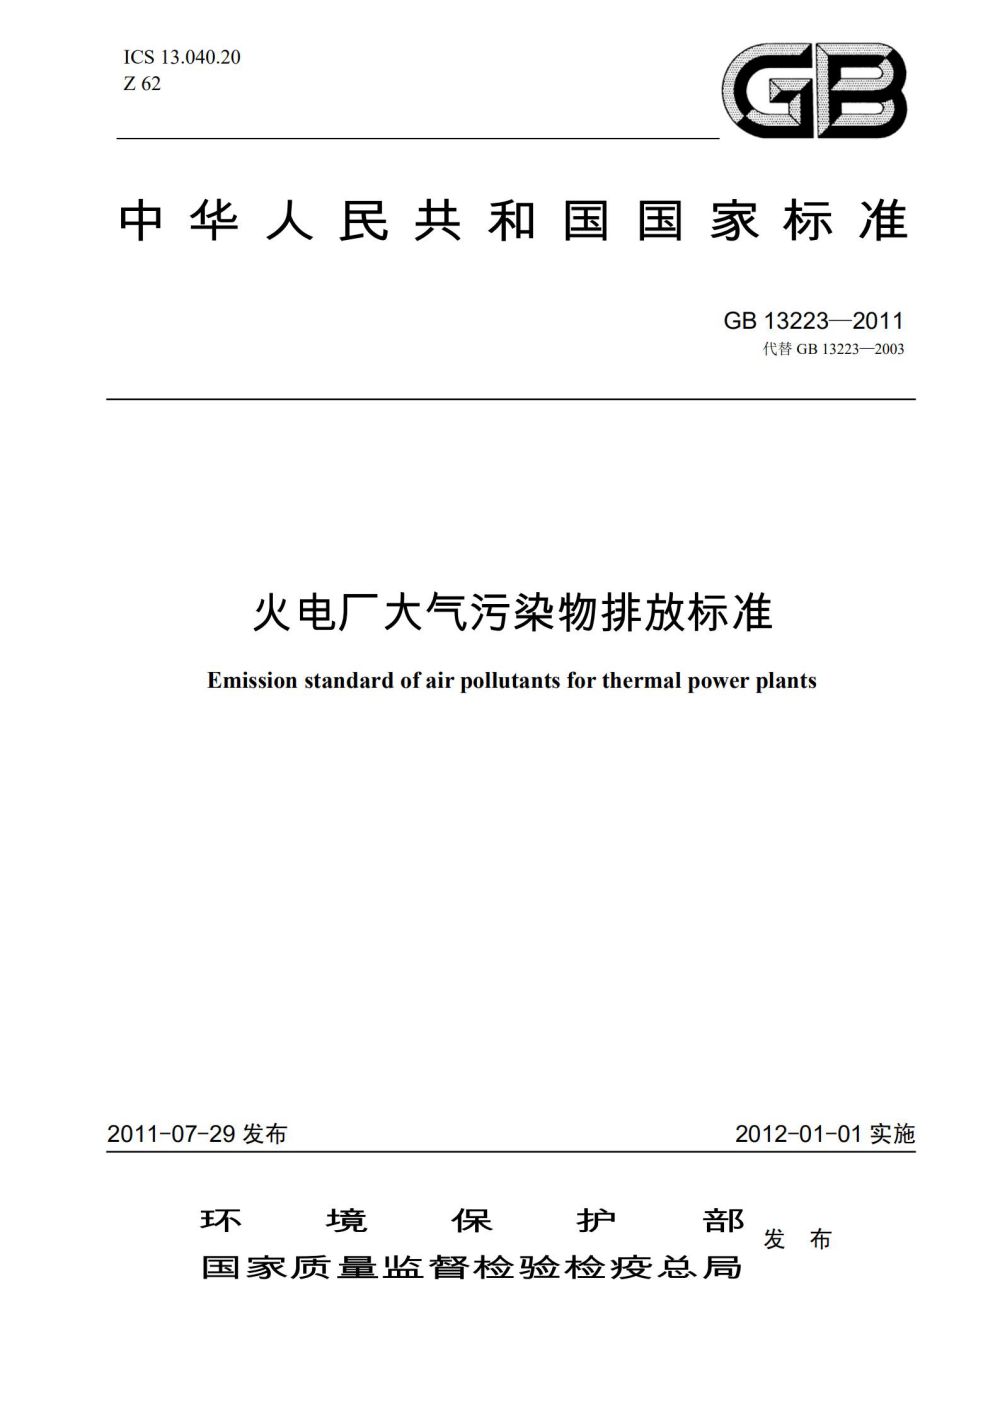 GB 13223-2011《火电厂大气污染物排放标准》